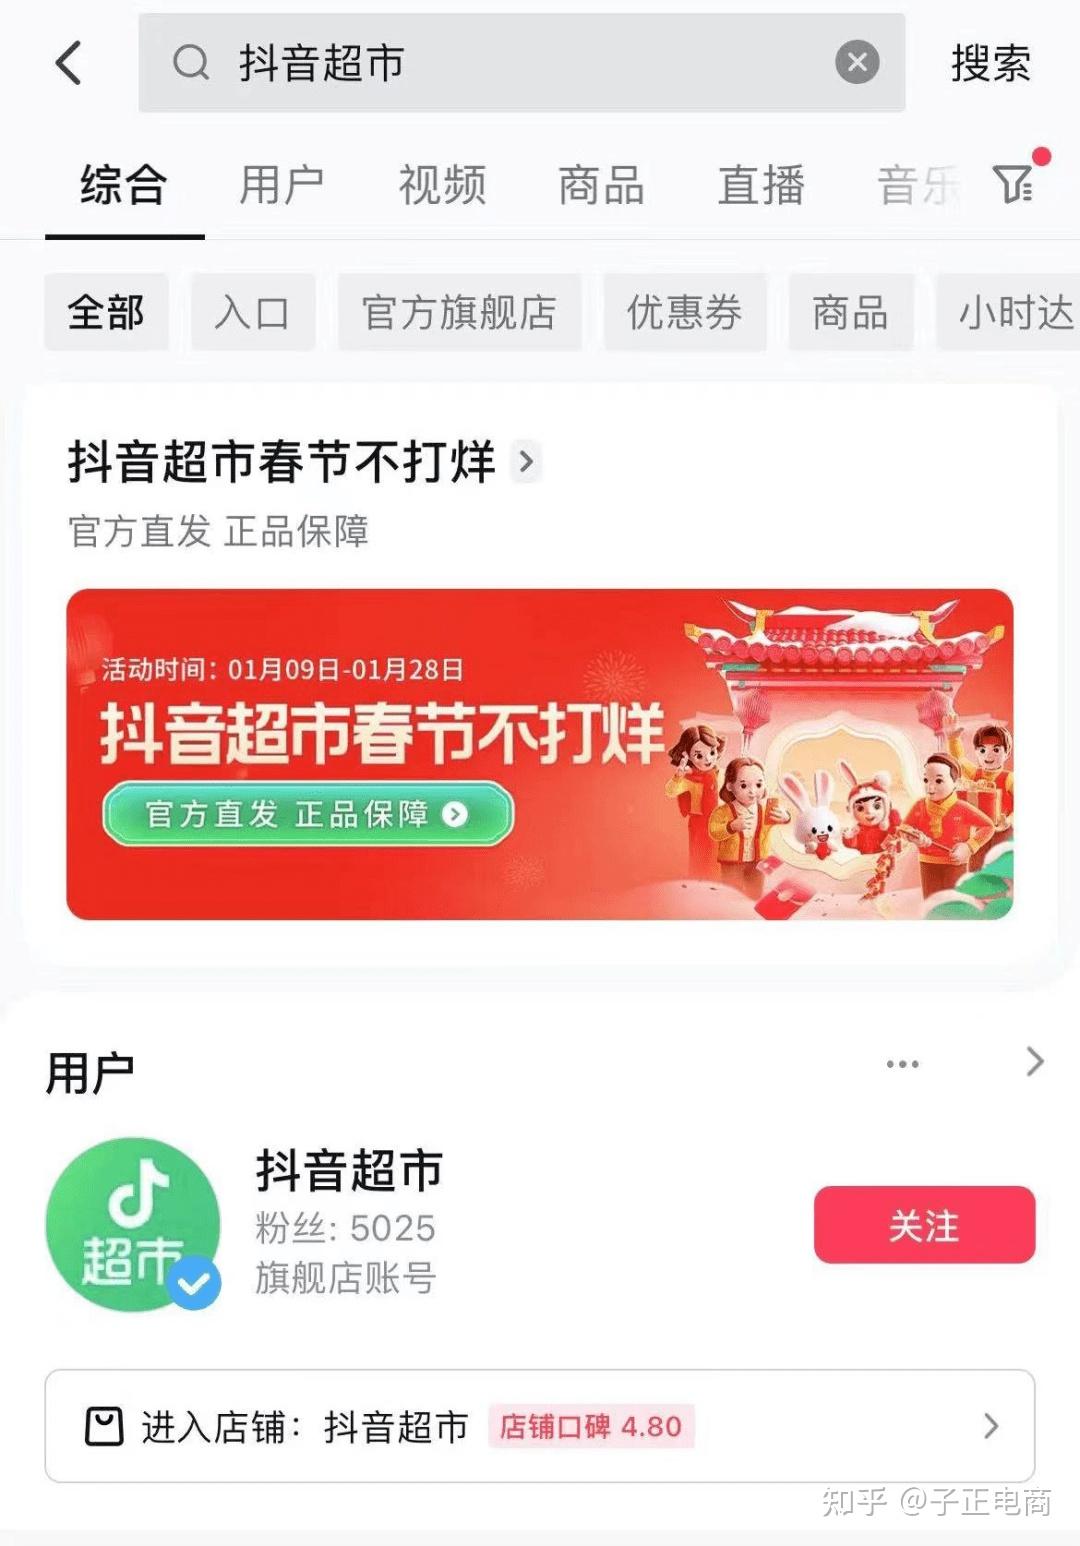 抖音72小时「真好超市」 in 北京合景·魔方购物中心 - 益闻EVENT-营销活动案例库-活动没灵感,就上益闻网